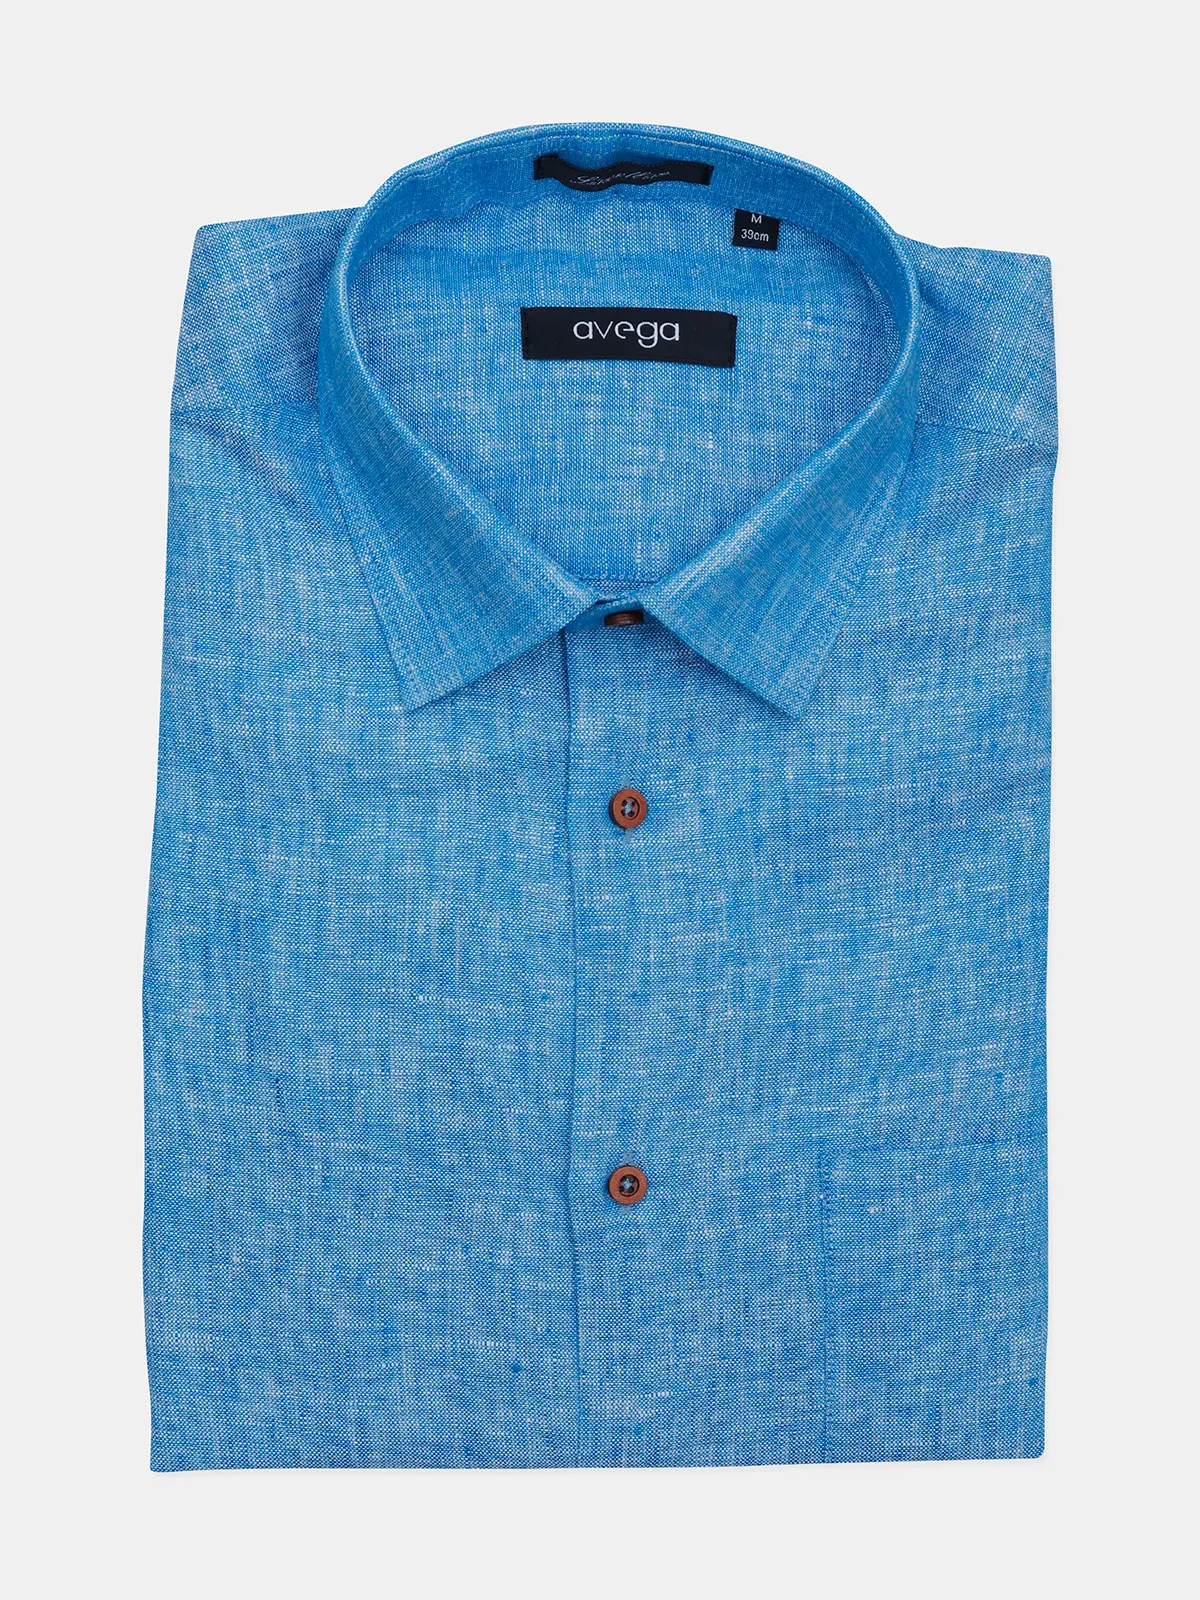 Avega sky blue solid linen formal shirt for men